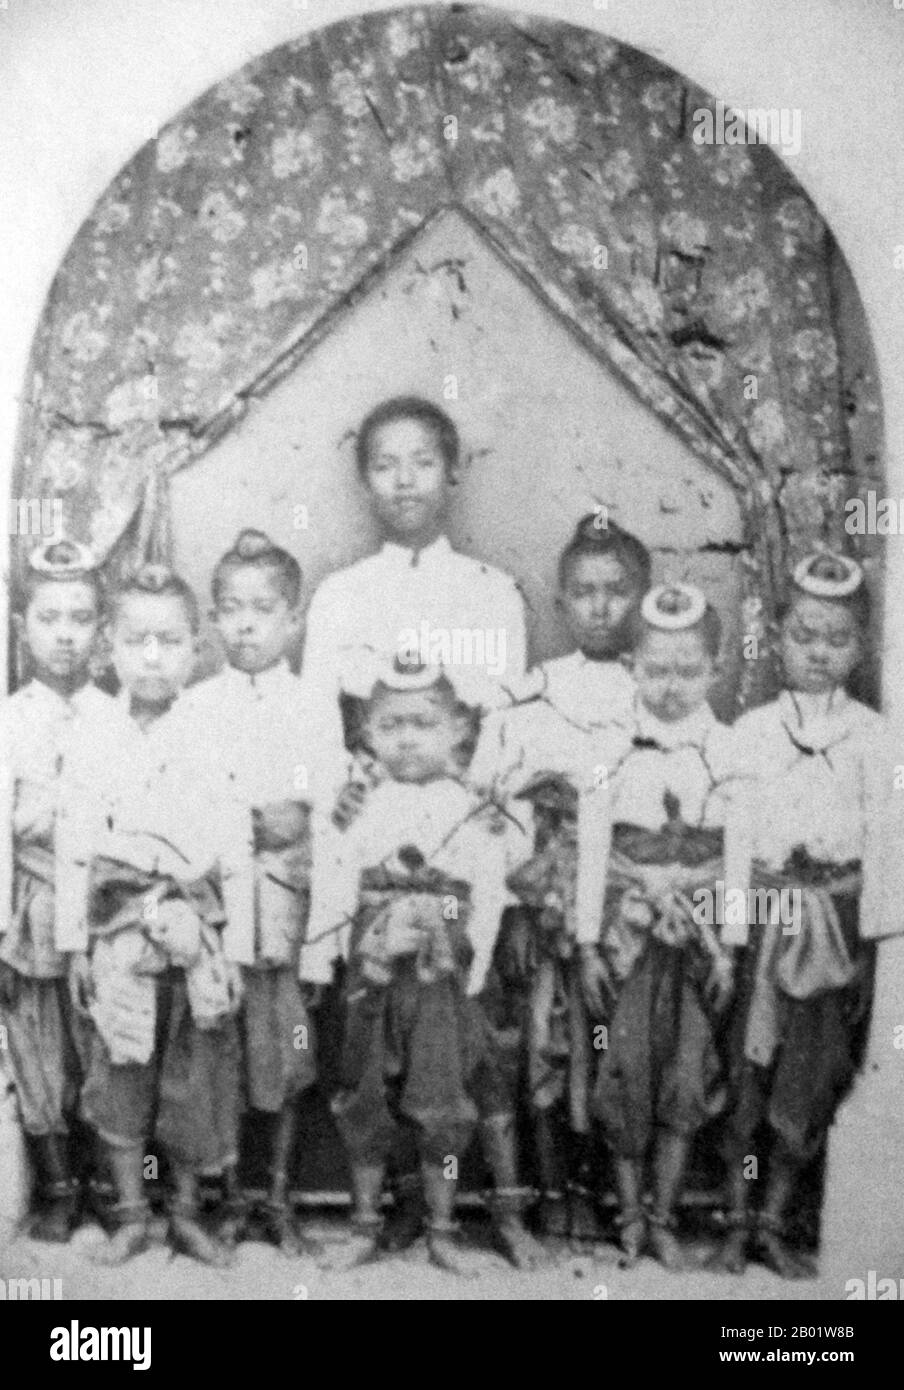 Phra Bat Somdet Phra Porametramaha Mongkut Phra Chom Klao Chao Yu Hua, o Rama IV, meglio conosciuto come Re Mongkut (18 ottobre 1804 – 1 ottobre 1868), è stato il quarto monarca del Siam (Thailandia) sotto la Casa di Chakri, al potere dal 1851 al 1868. Era uno dei monarchi più venerati del paese. Durante il suo regno, la pressione dell'espansionismo occidentale si sentiva per la prima volta in Siam. Mongkut abbracciò le innovazioni occidentali e iniziò la modernizzazione del Siam, sia nella tecnologia che nella cultura, guadagnandogli il soprannome di "Padre della scienza e della tecnologia" in Siam. Mongkut era conosciuto anche per Foto Stock